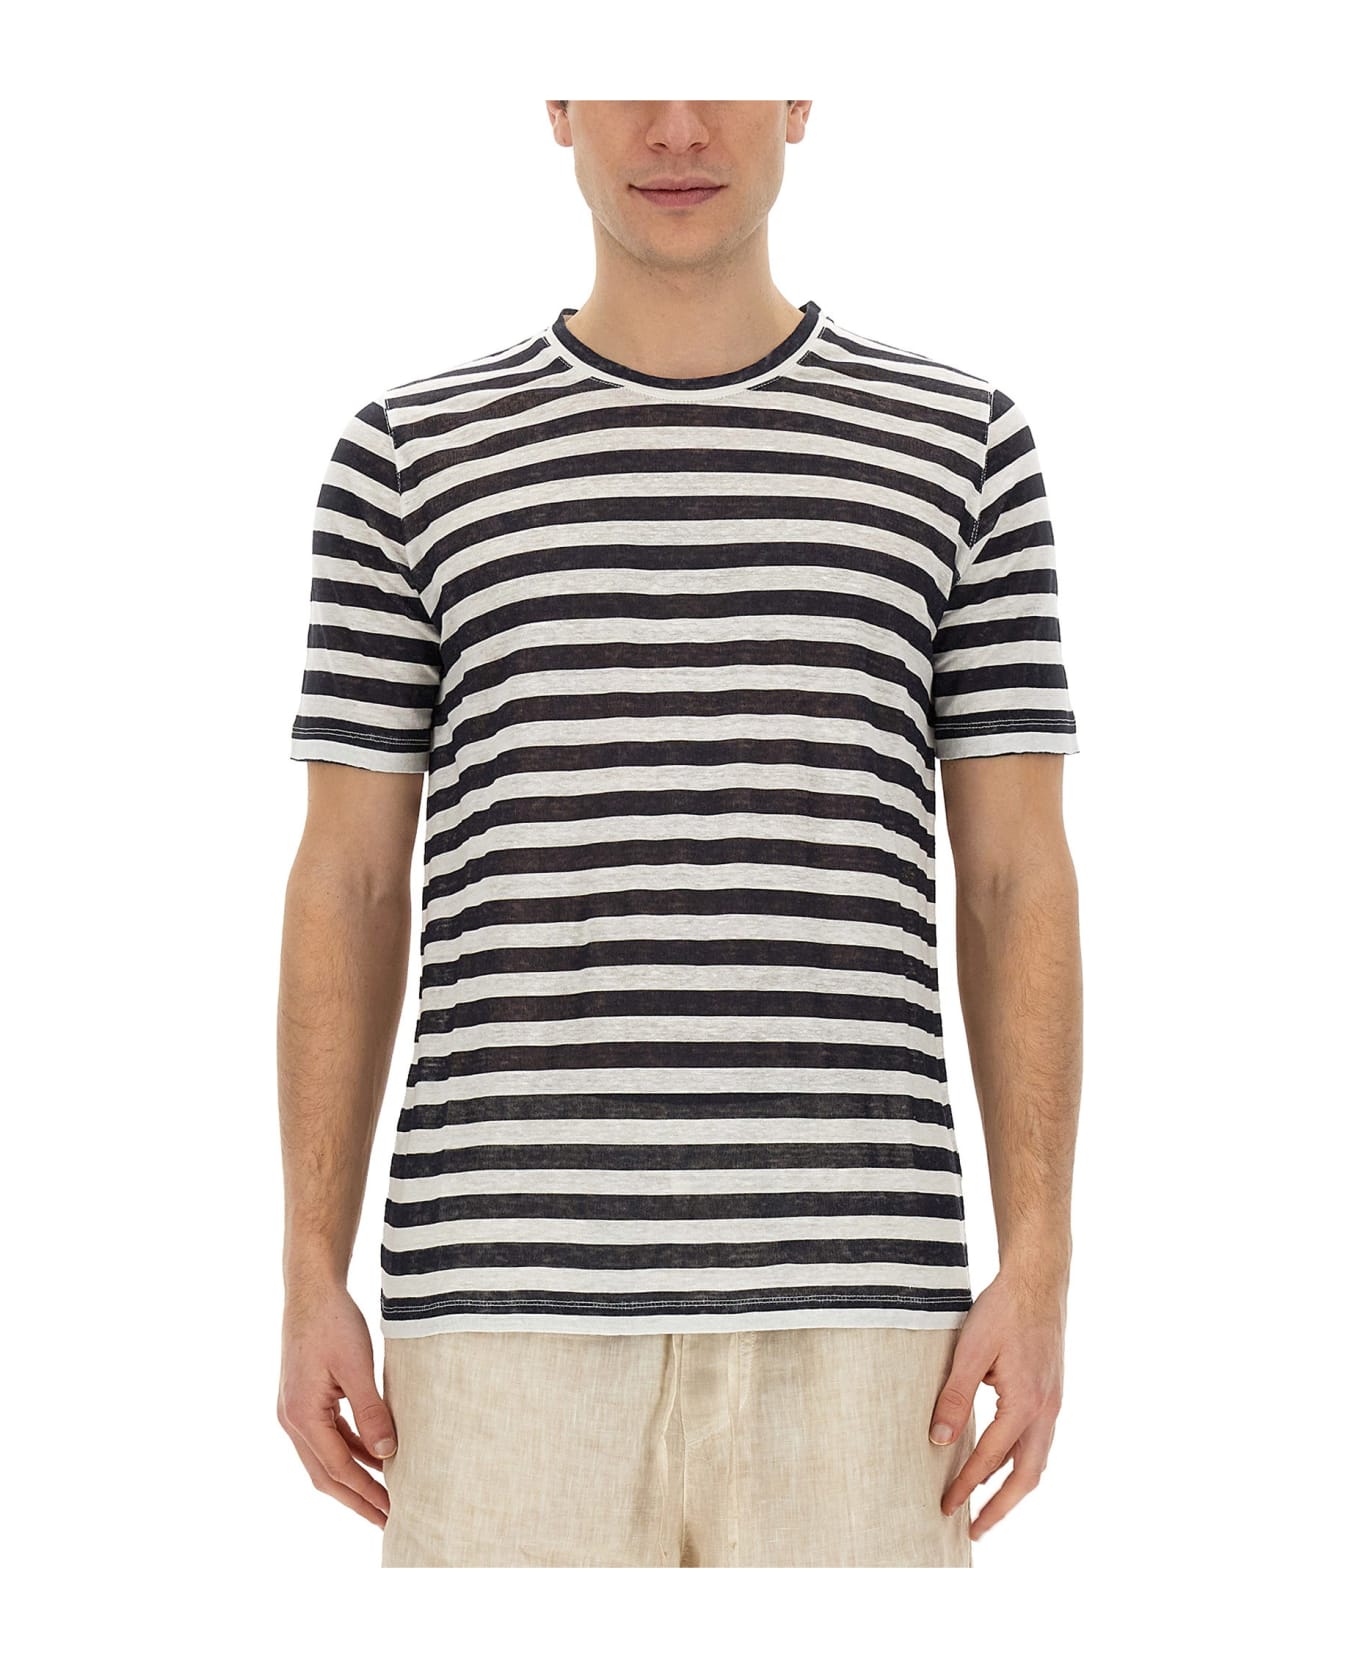 120% Lino Striped T-shirt